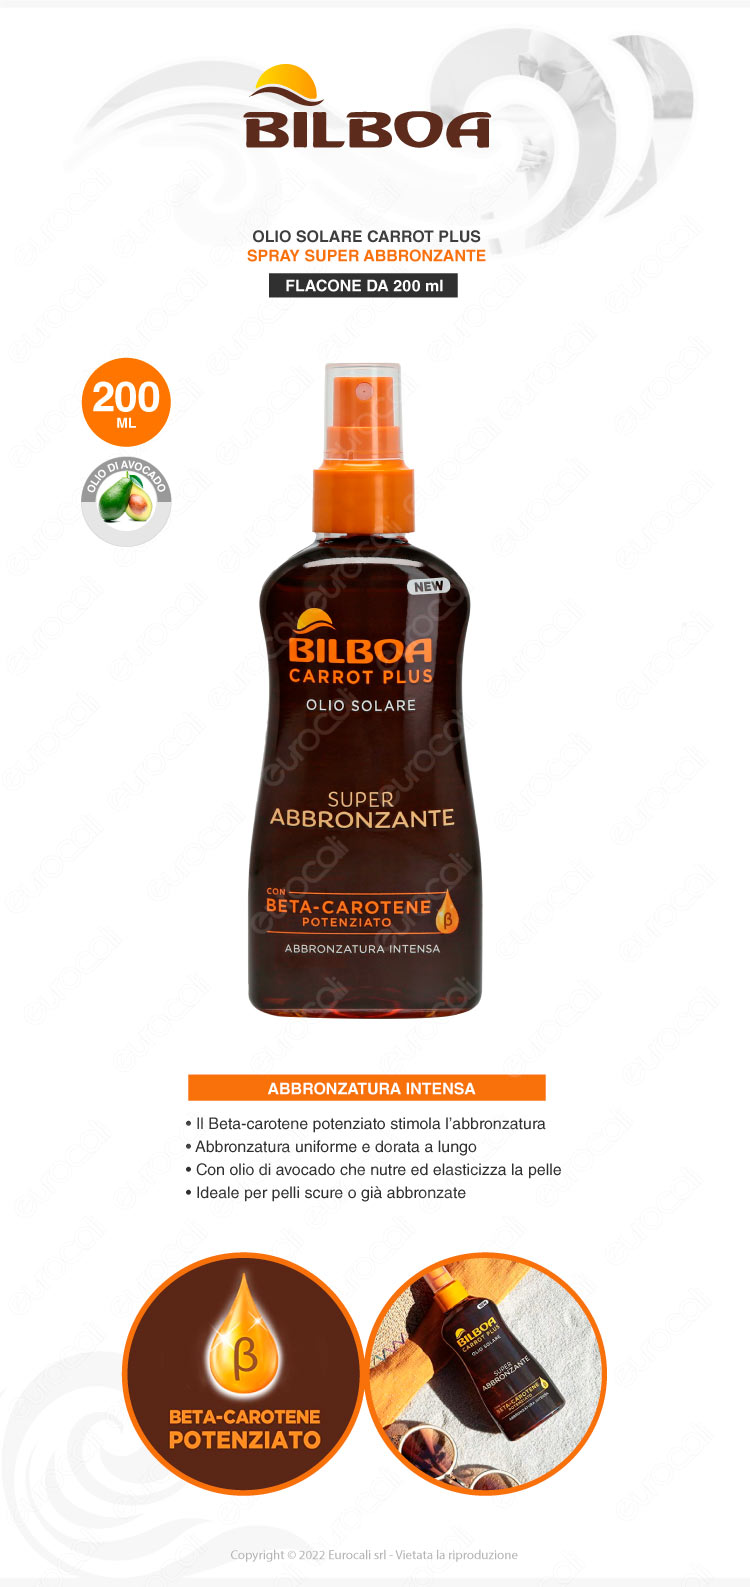 bilboa olio super abbronzante spray 200ml con beta-carotene potenziato